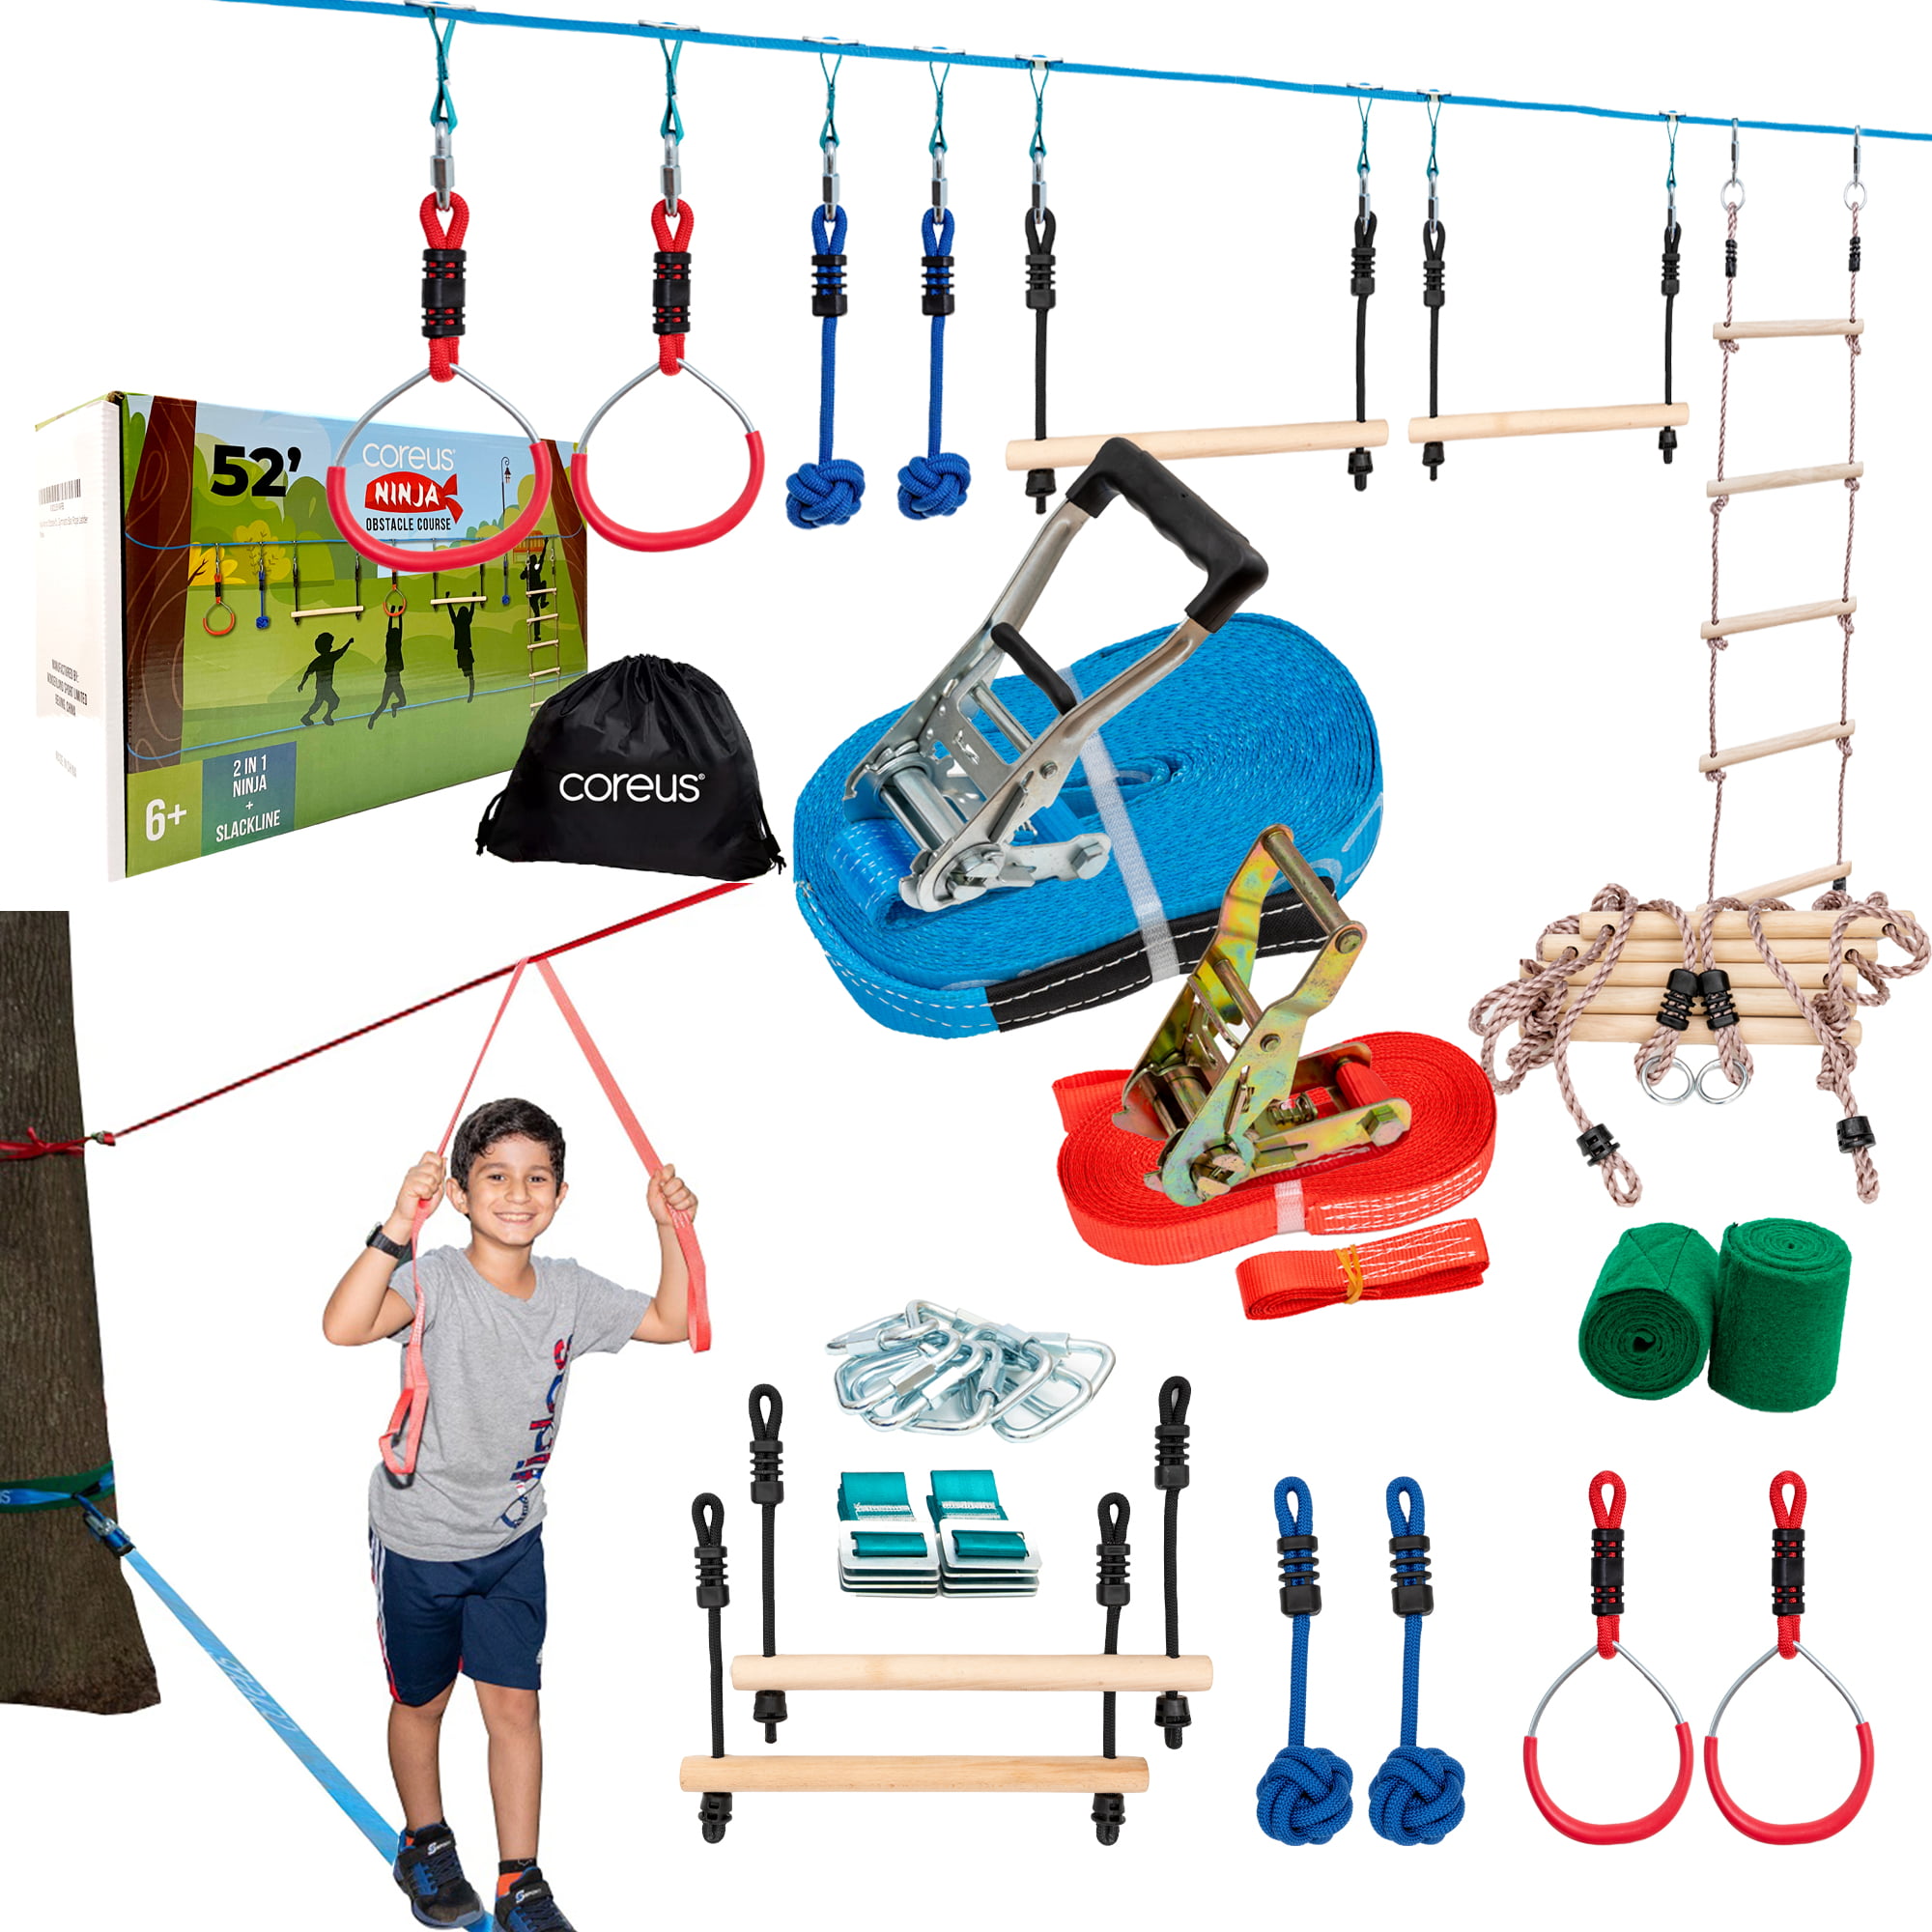 Coreus Ninja Warrior Obstacle Course for Kids Slackline 52 Ft. for best gifts for boys